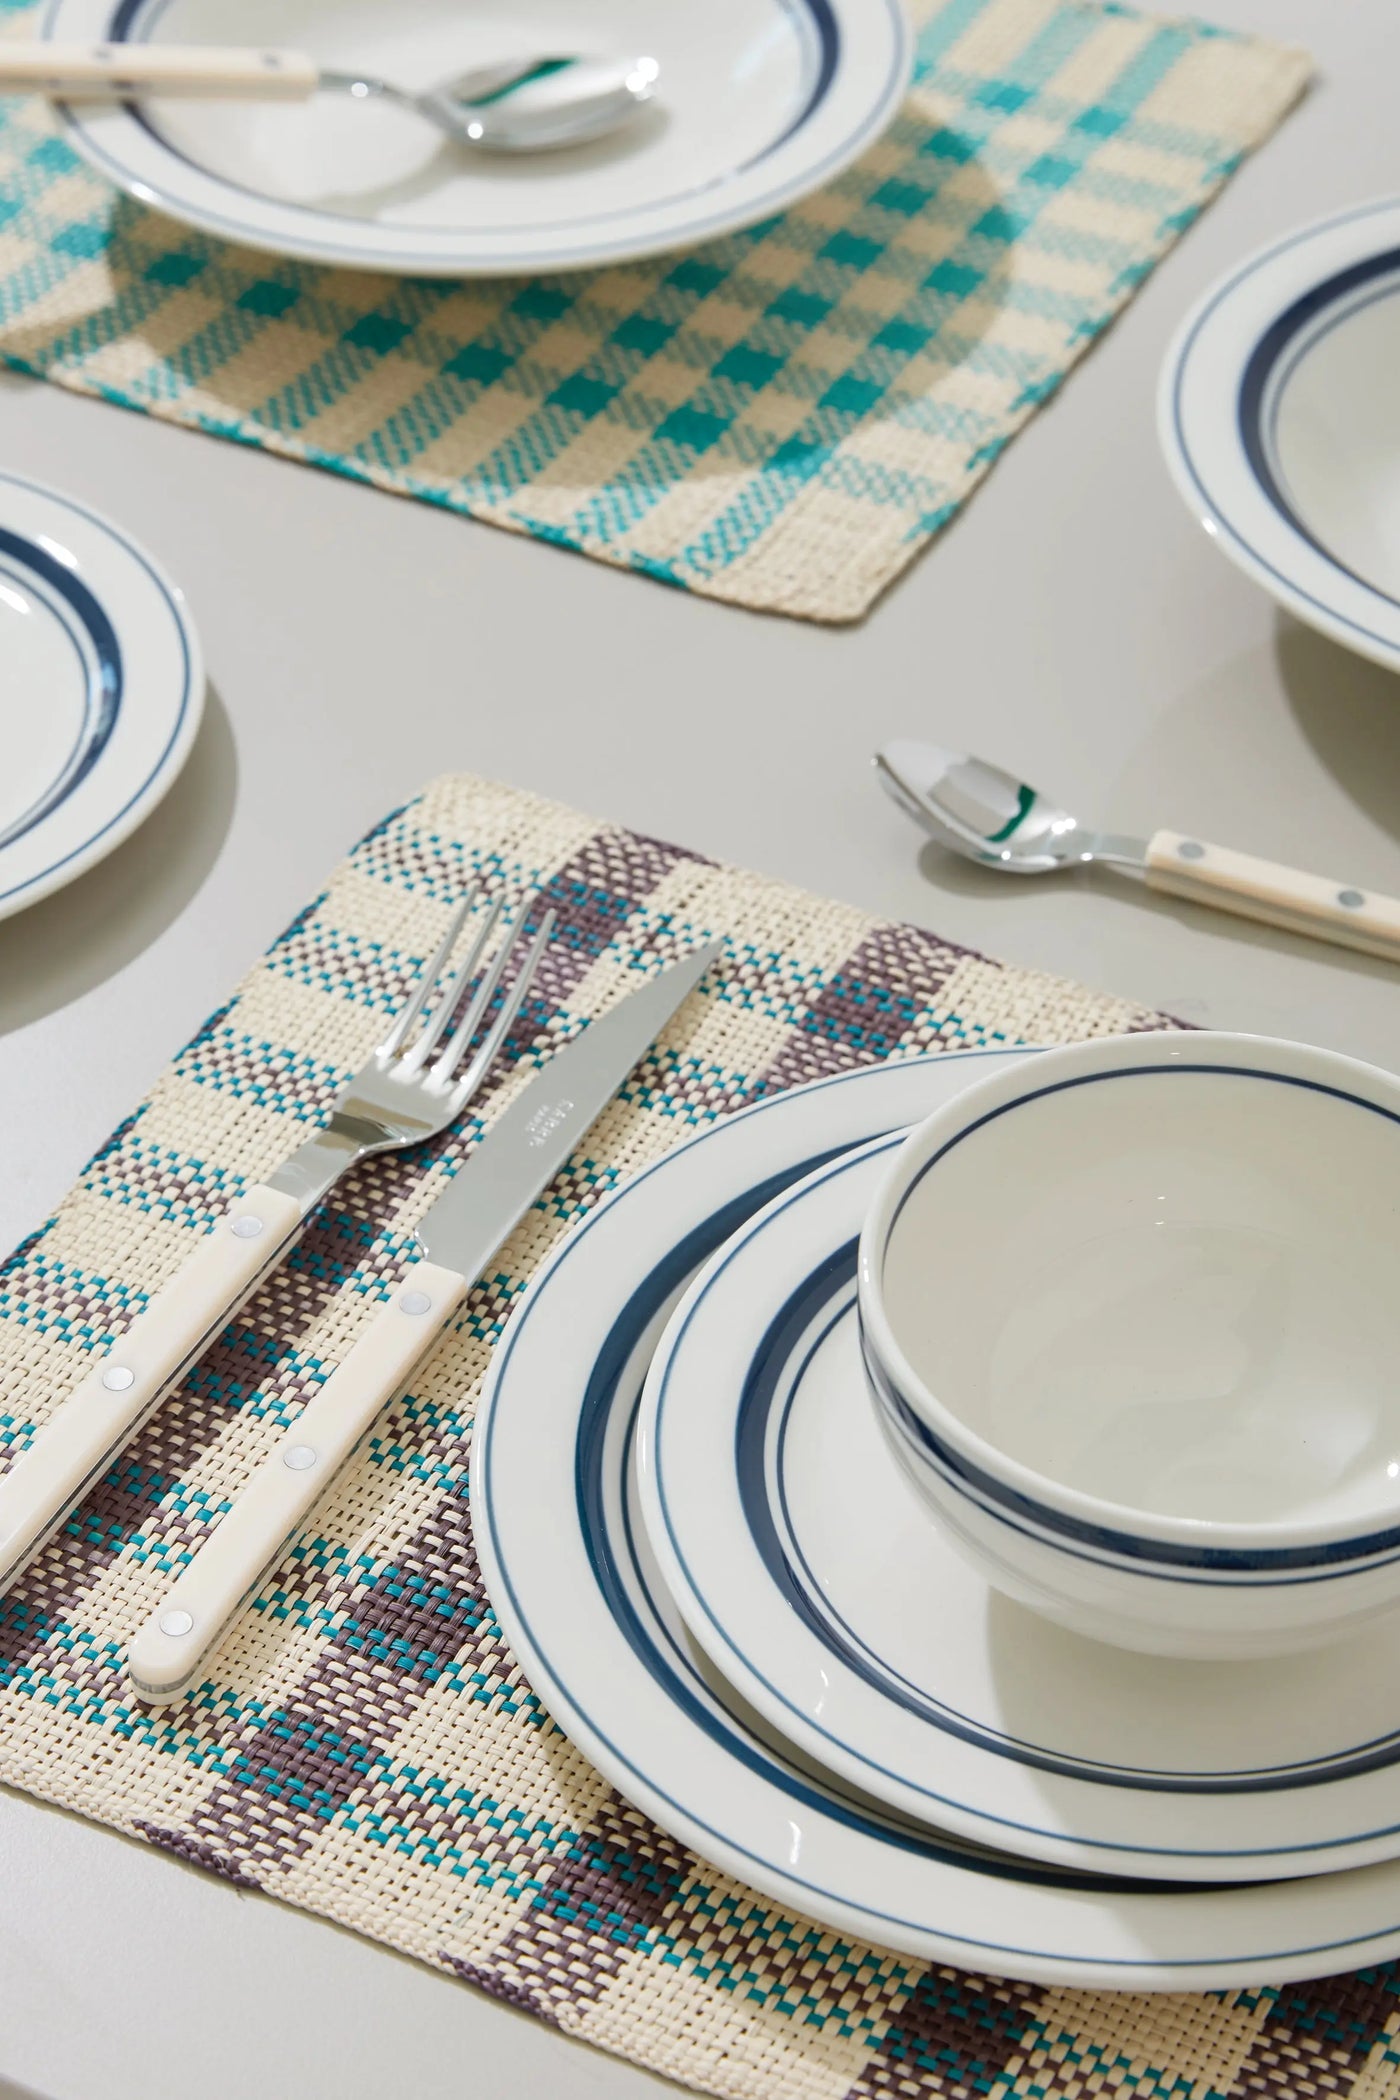 Hvid tallerken med blå striber i keramik fra Japan | 2 størrelser Studio Hafnia